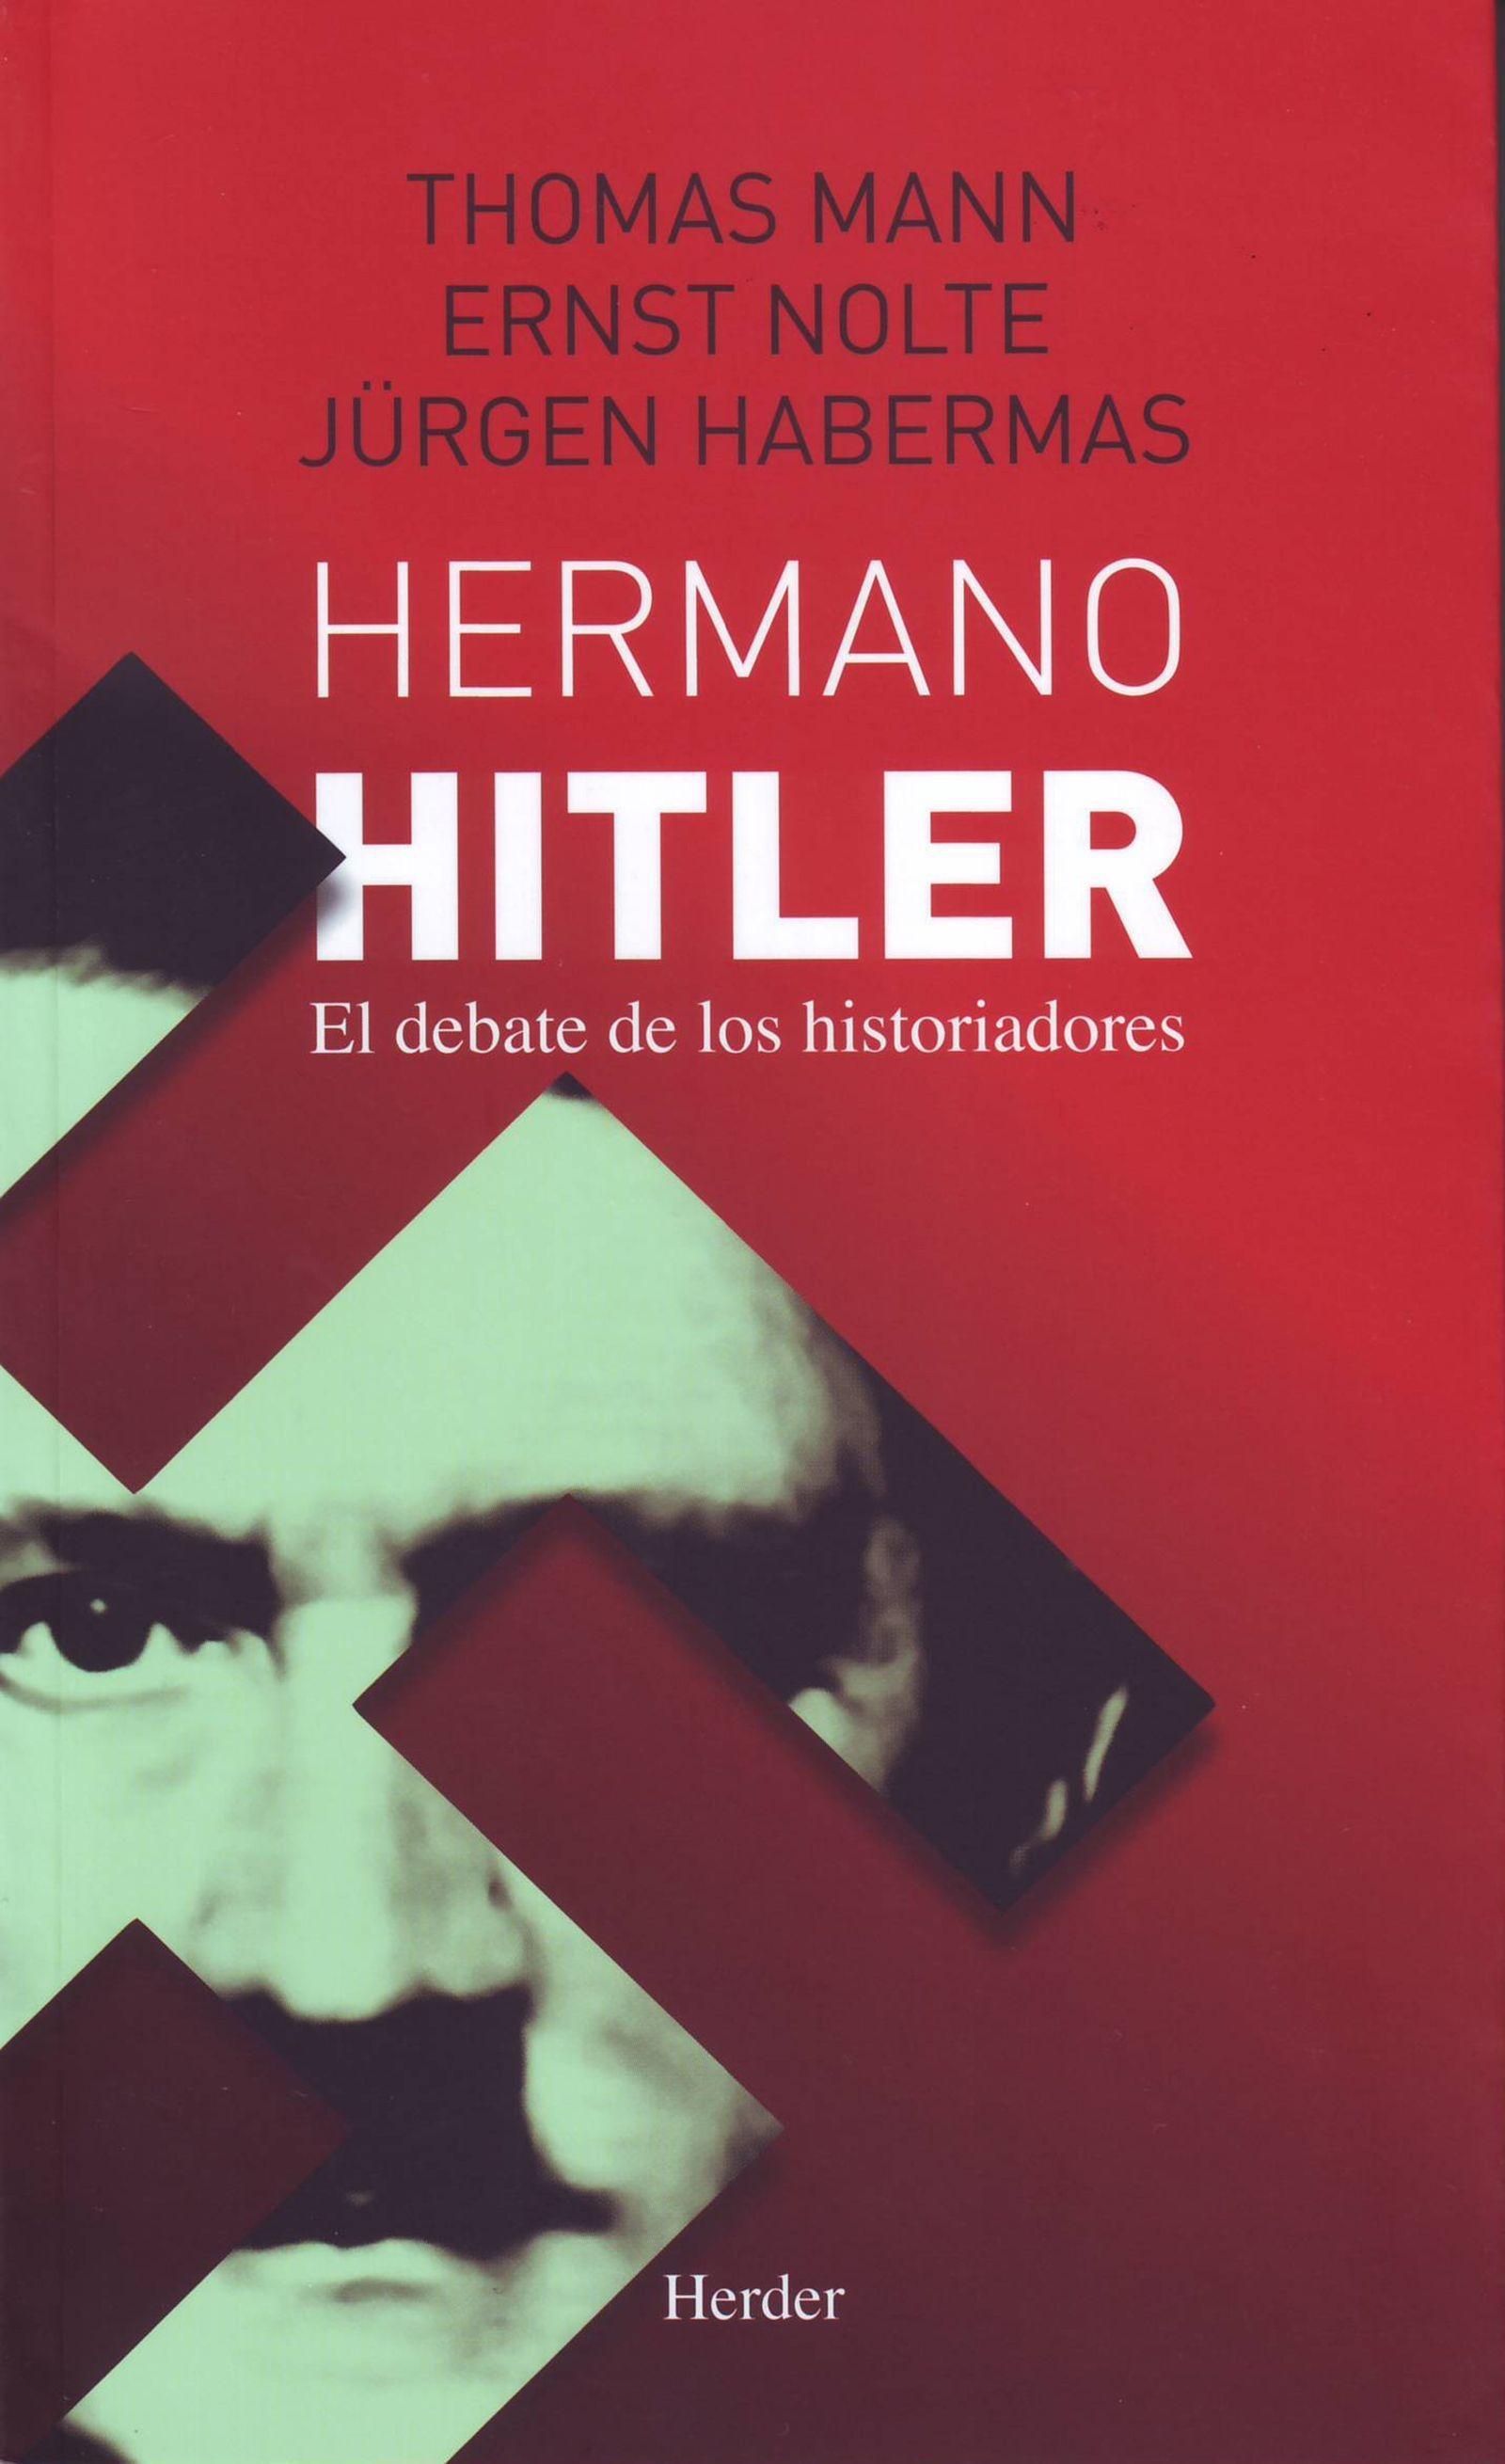 HERMANO HITLER "EL DEBATE DE LOS HISTORIADORES"